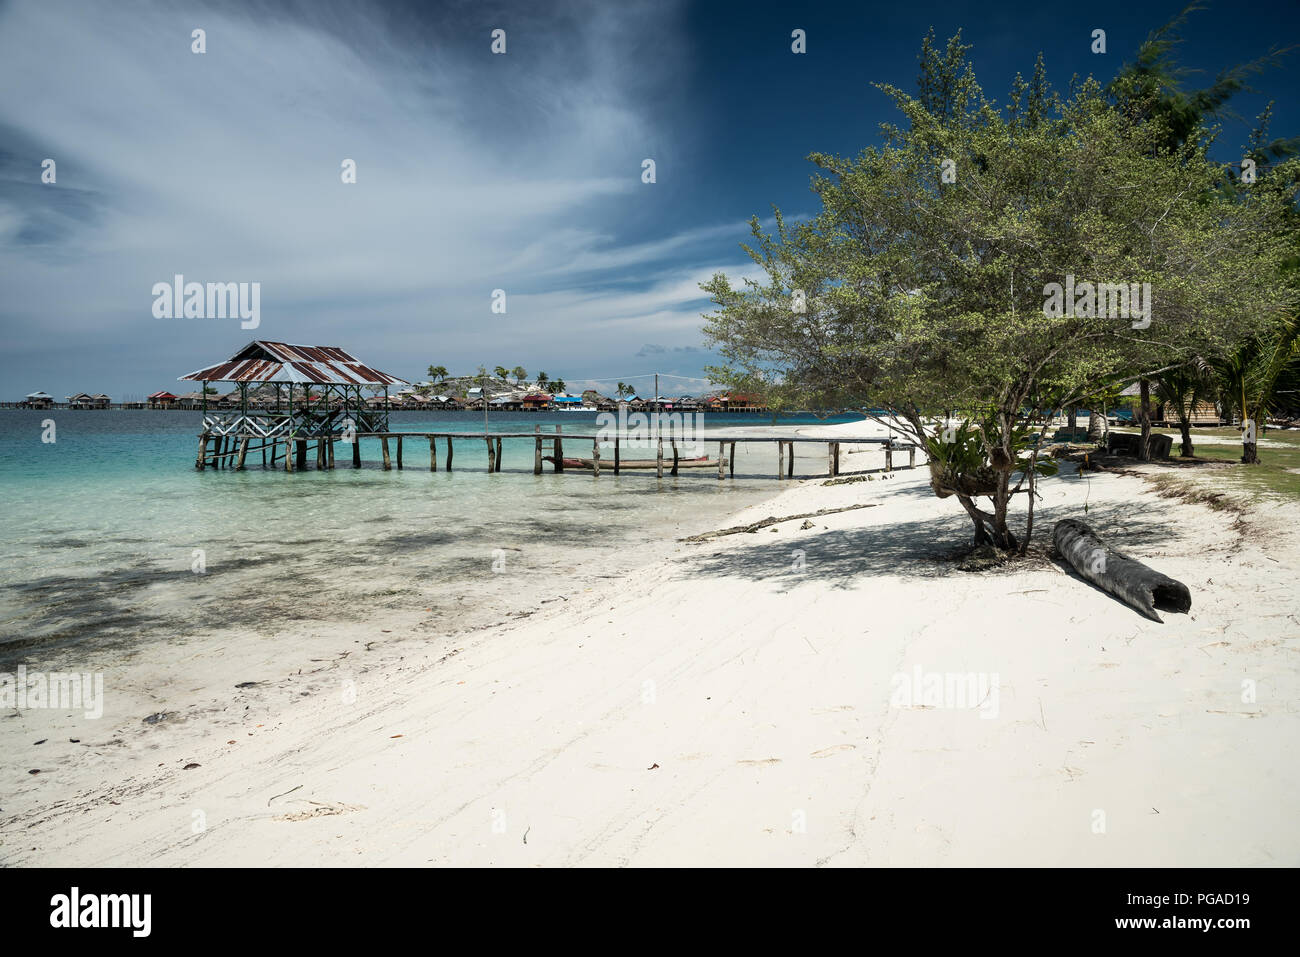 Tropical sand beach resort sulla remota Isola di Malenge, parte di Togean arcipelago con barche tradizionali, Lestari, Indonesia Foto Stock